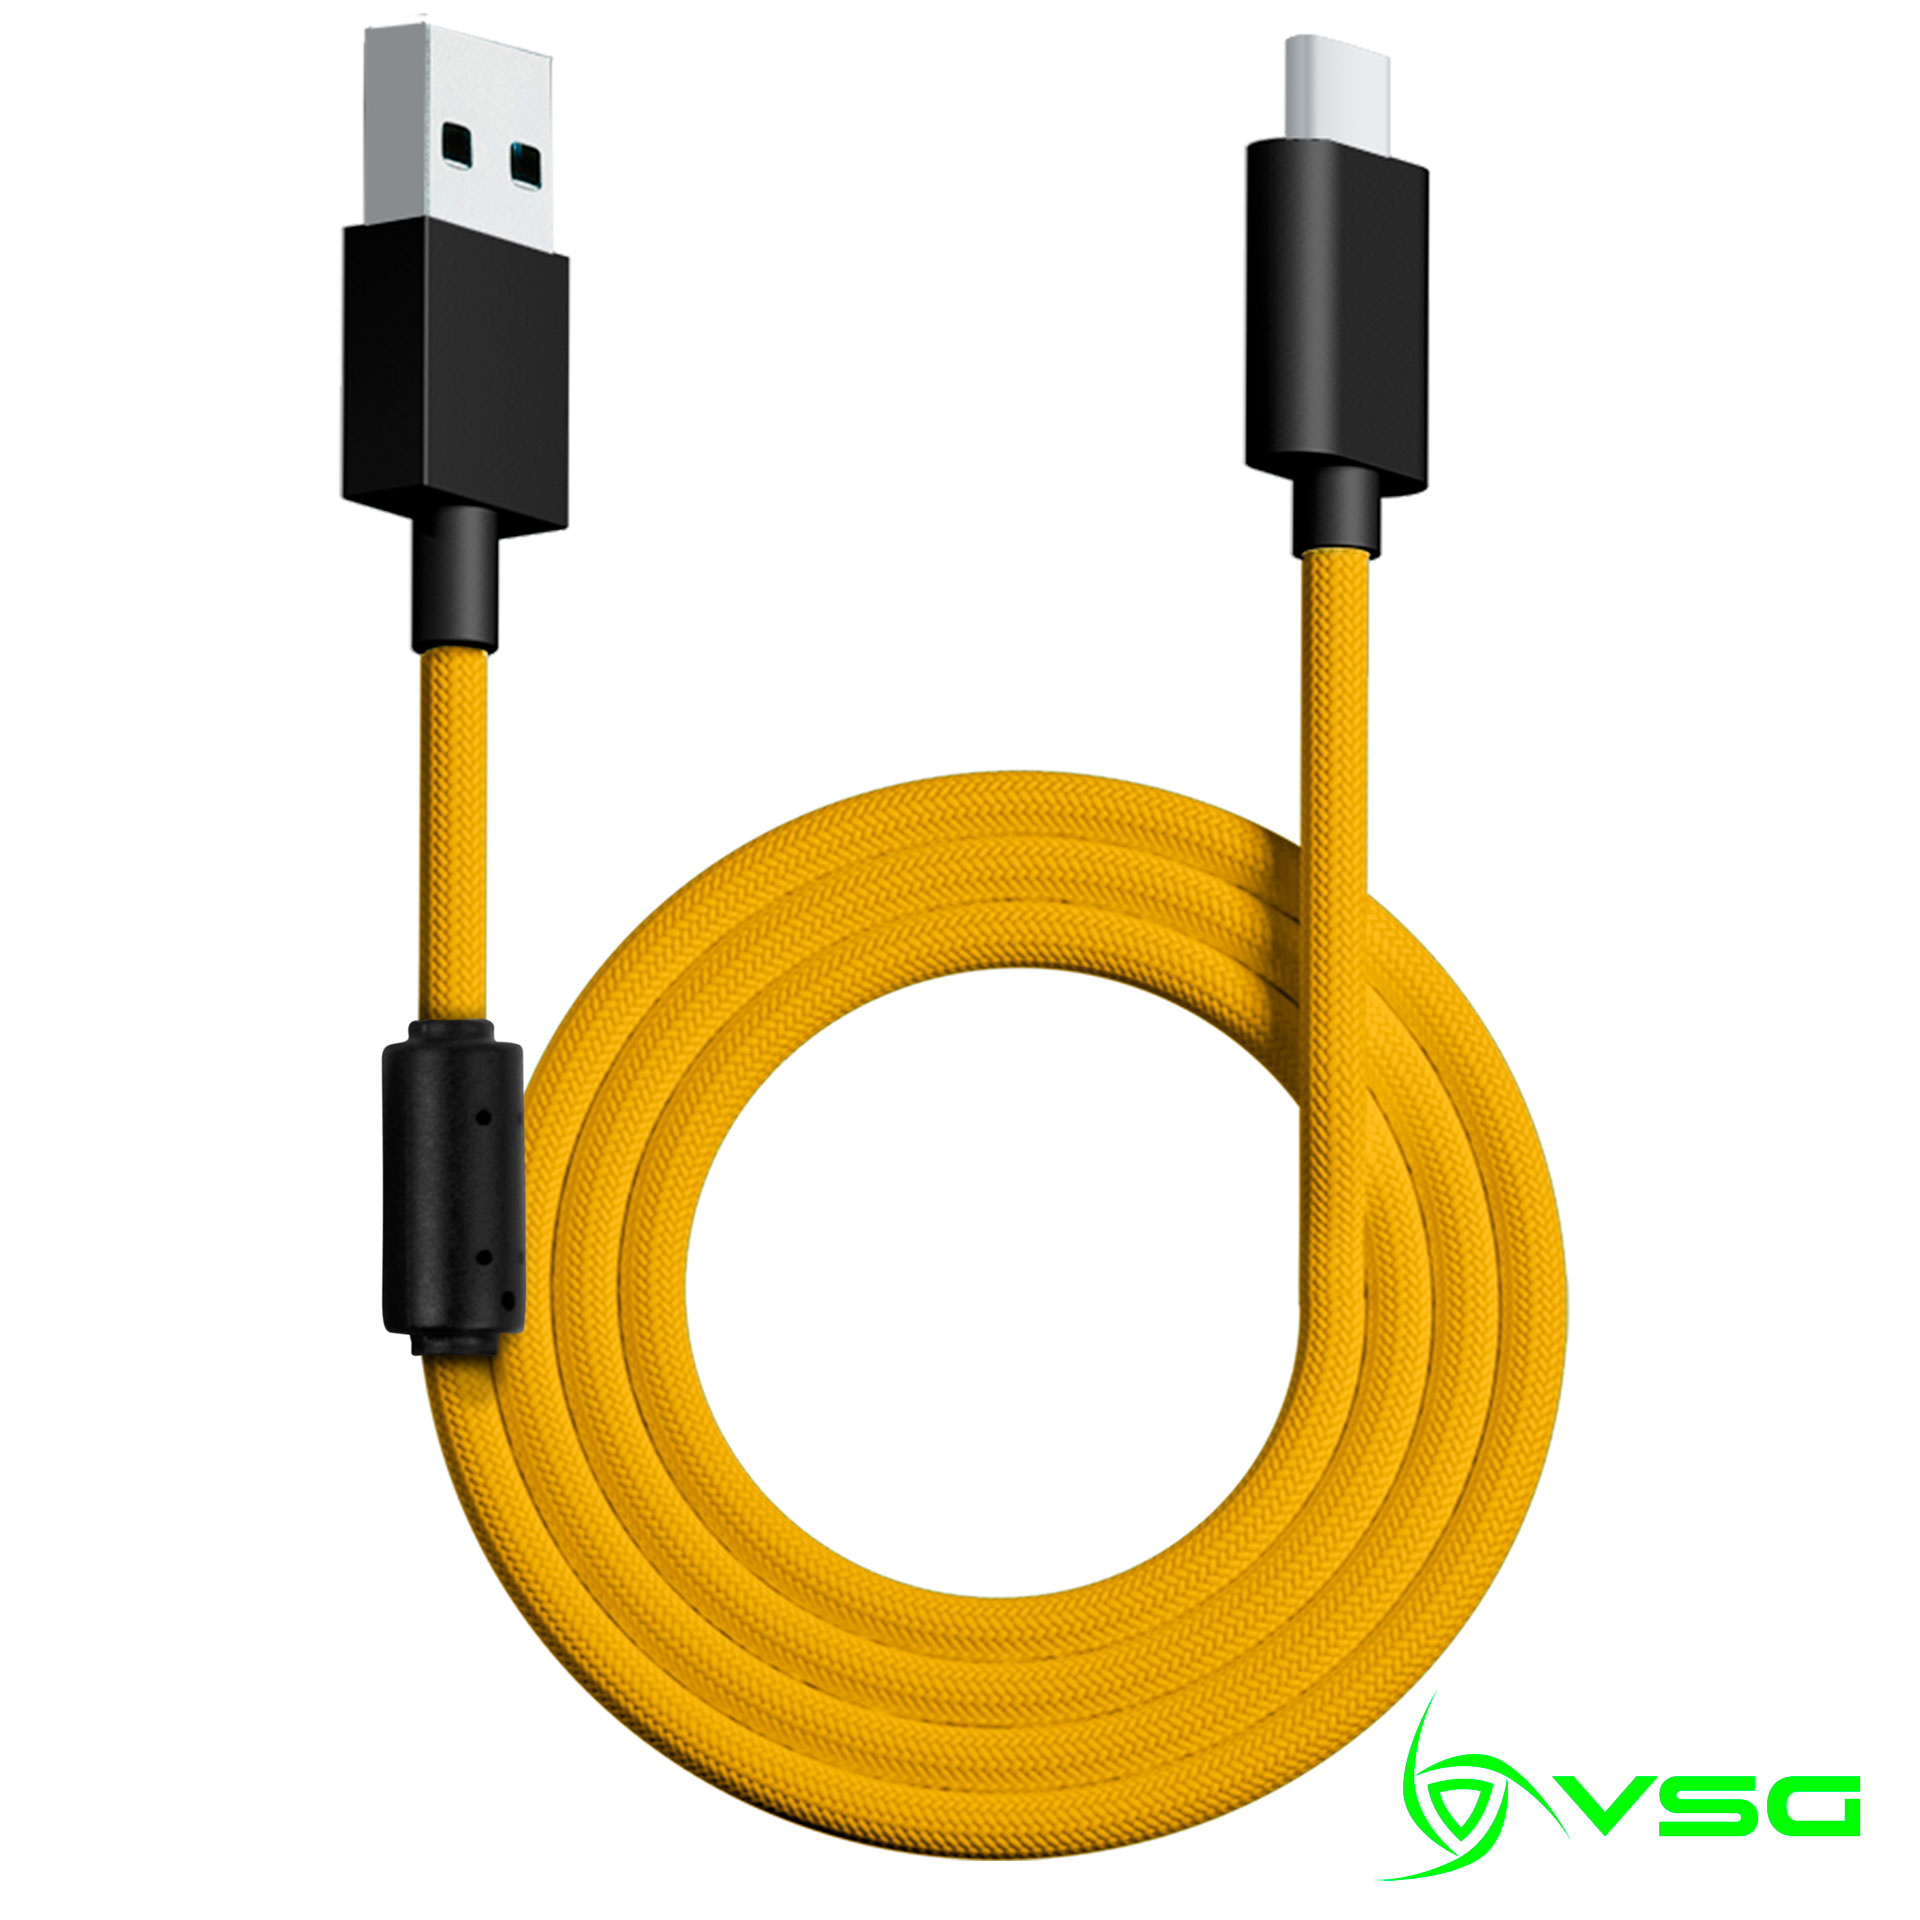 CABLE USB VSG TIPO C AMARILLO - VG-CABLE-AQ-YELLOW / Precio: $119.00